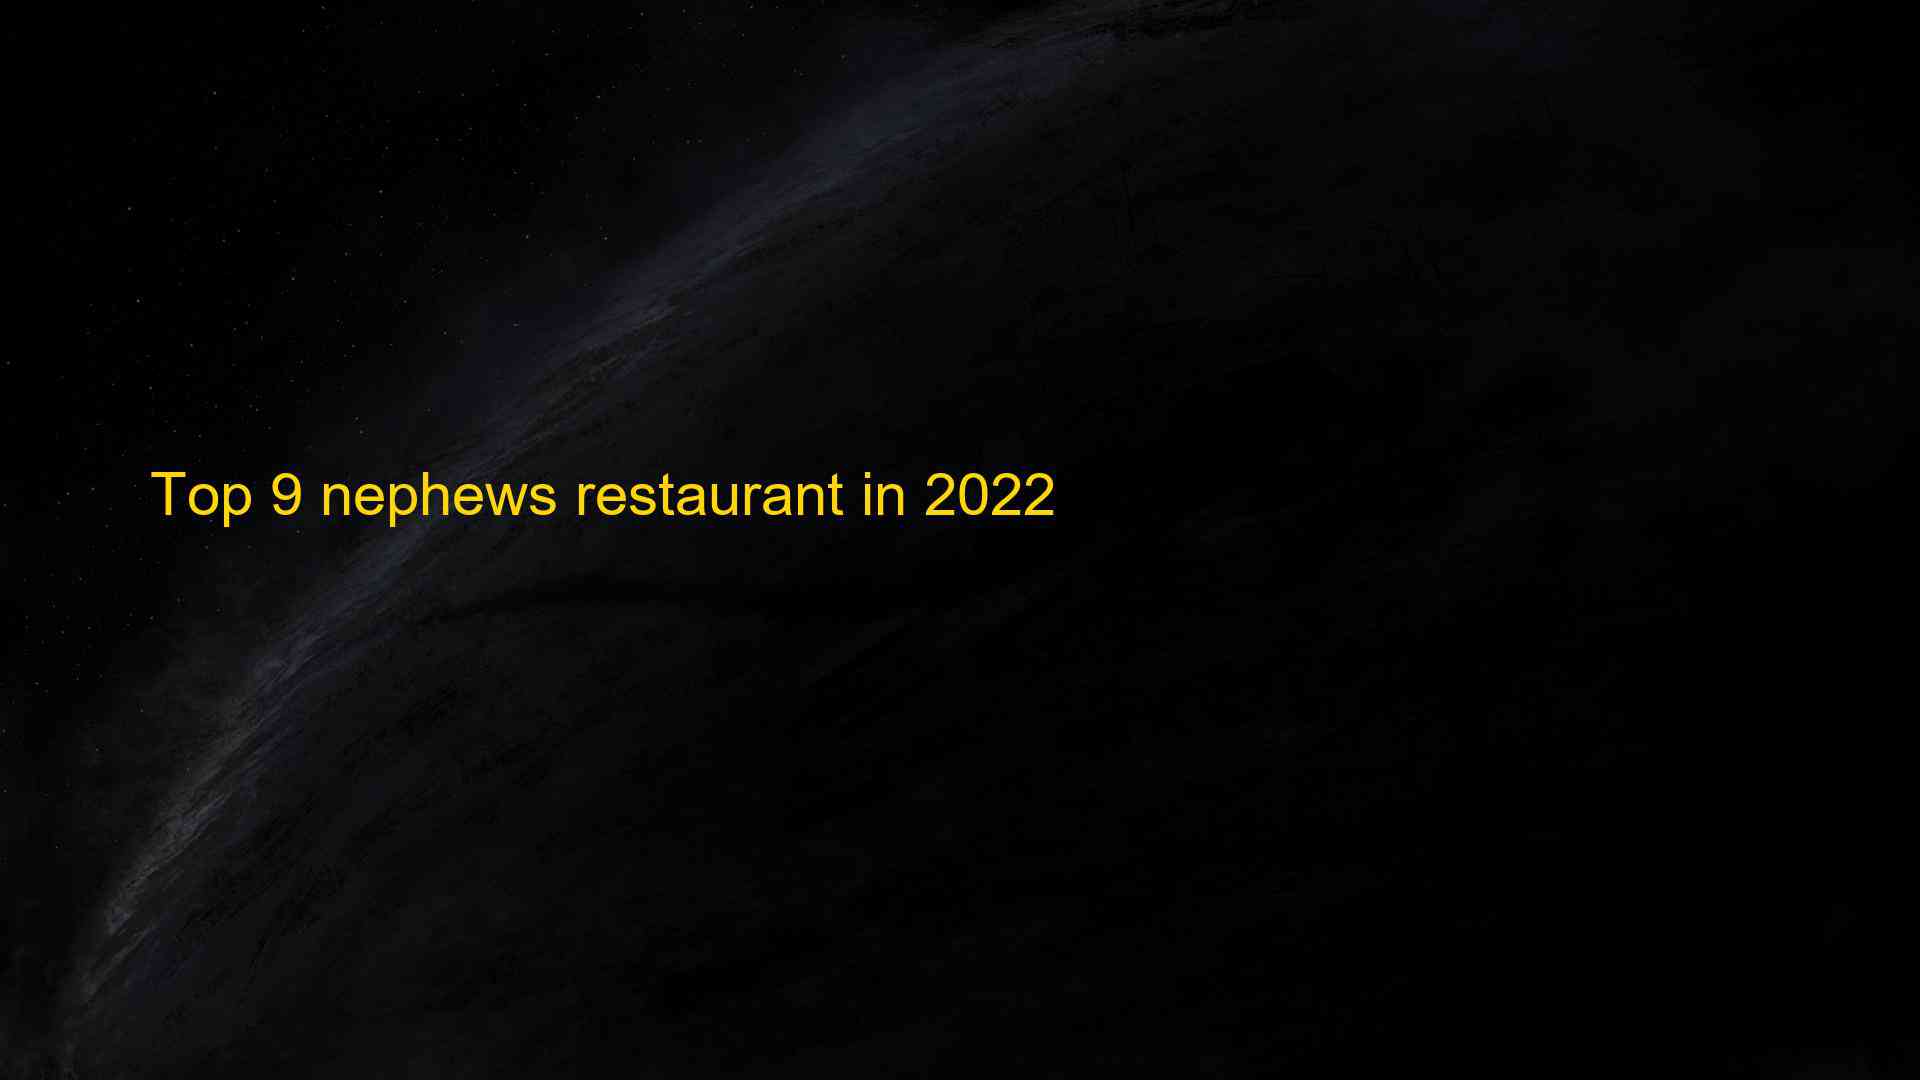 Top 9 nephews restaurant in 2022 1662997247